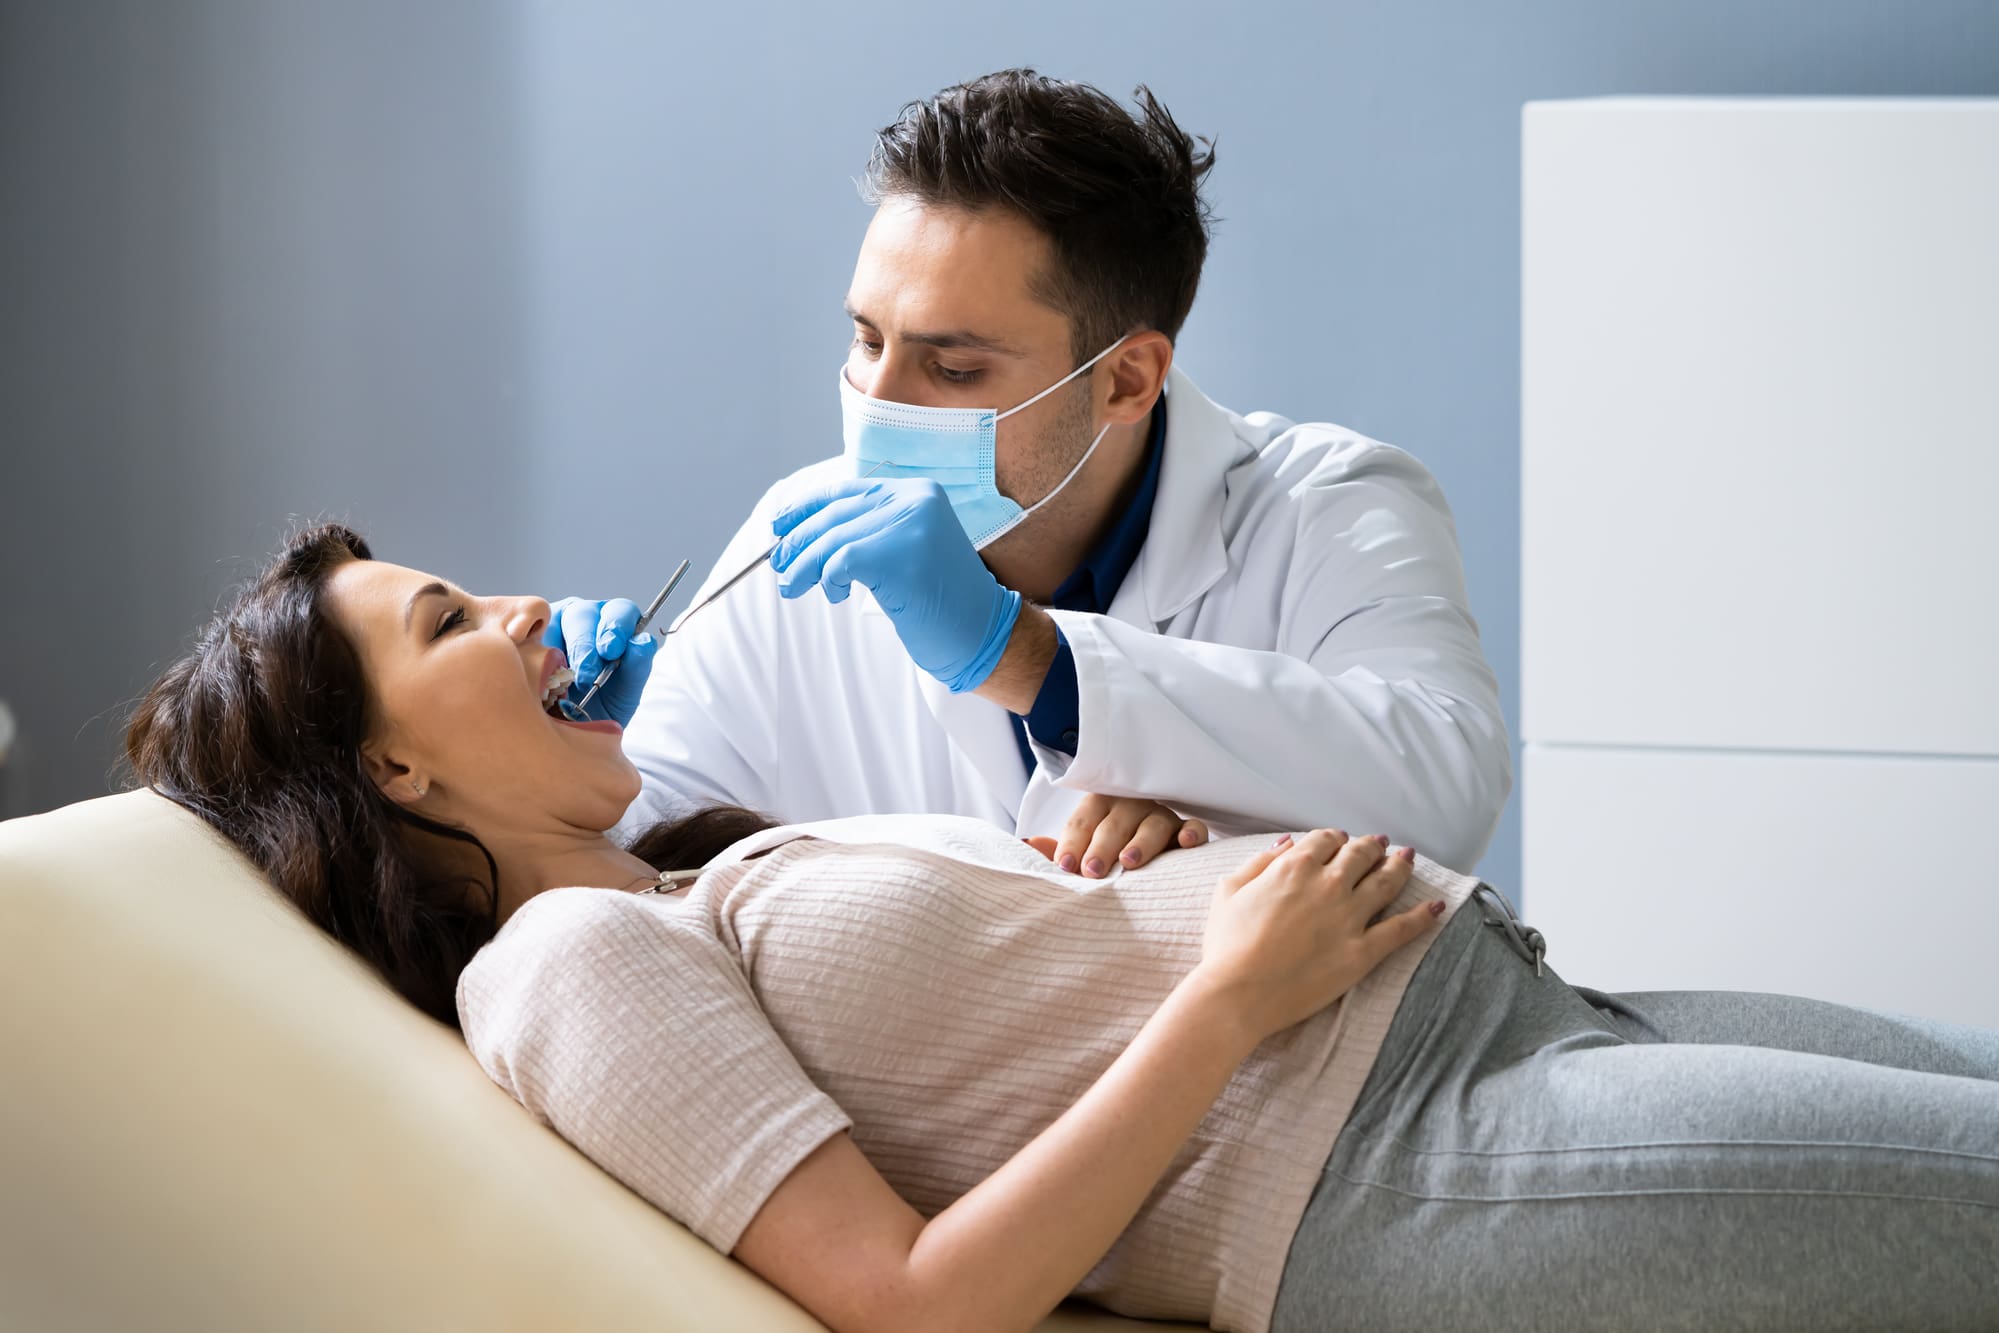 embarazada en dentista - problemas dentales durante el embarazo